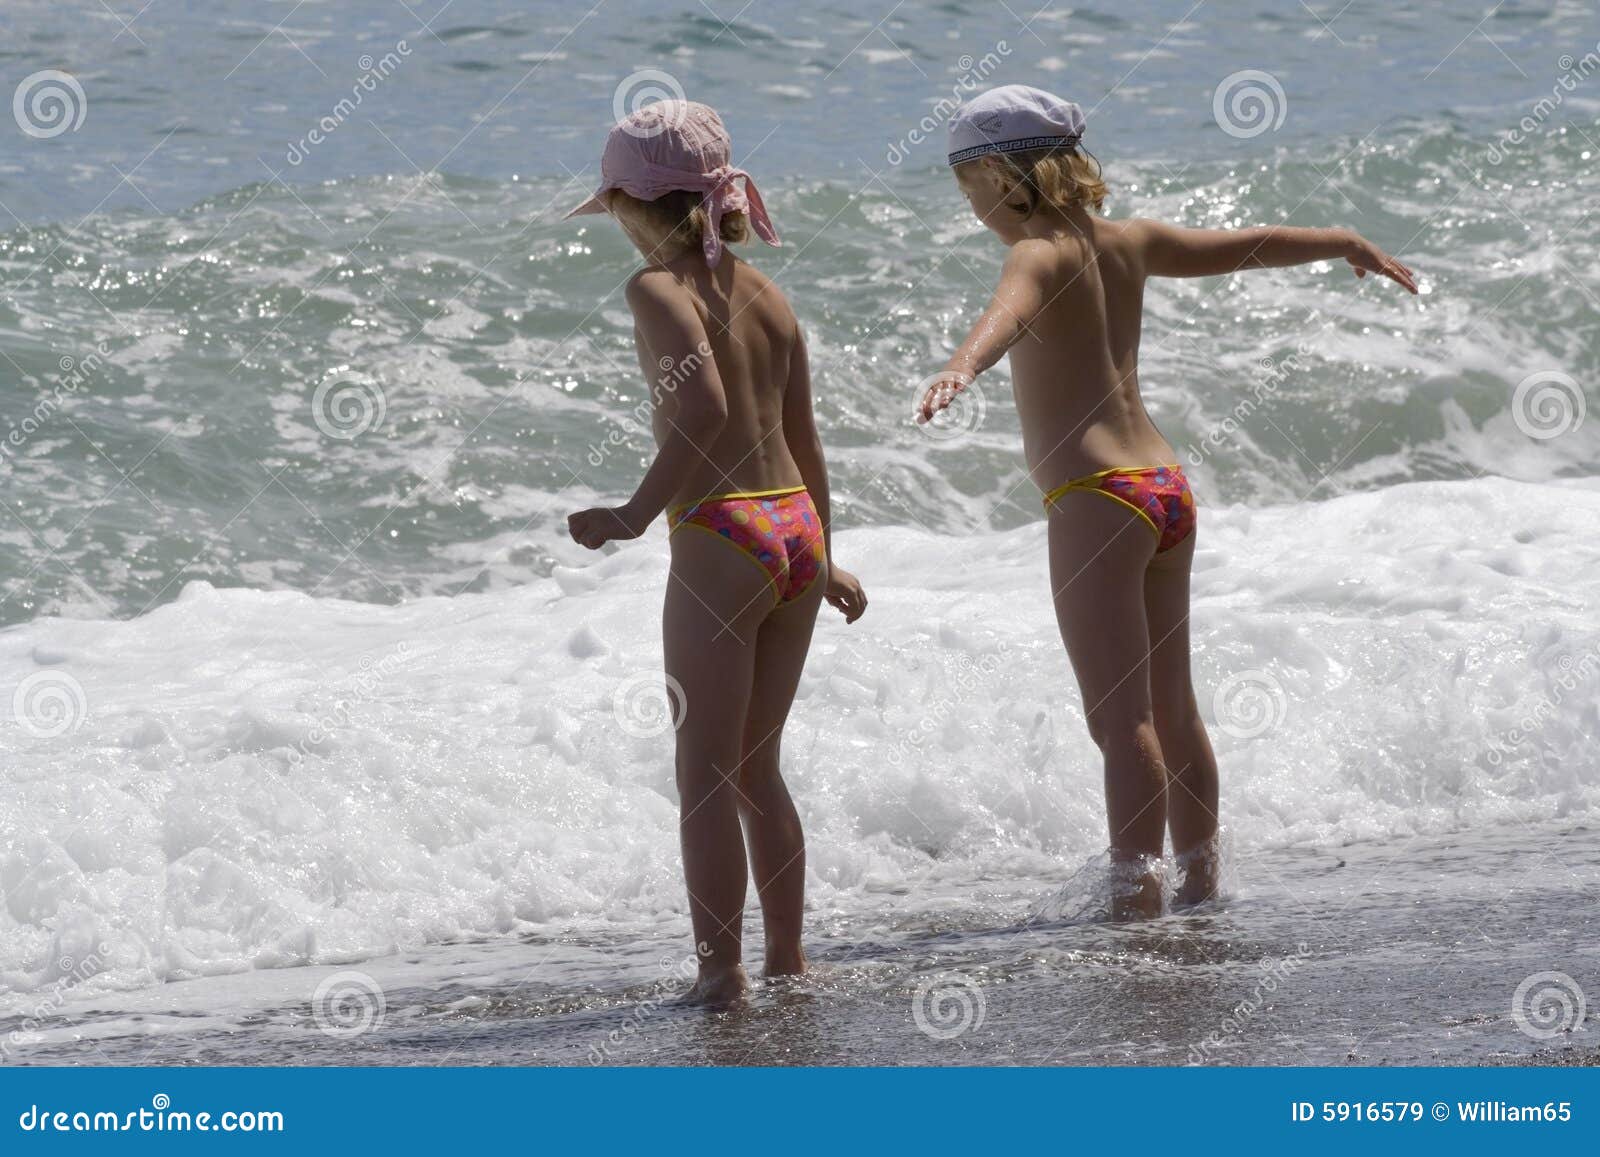 фото дети на голом пляже фото 30